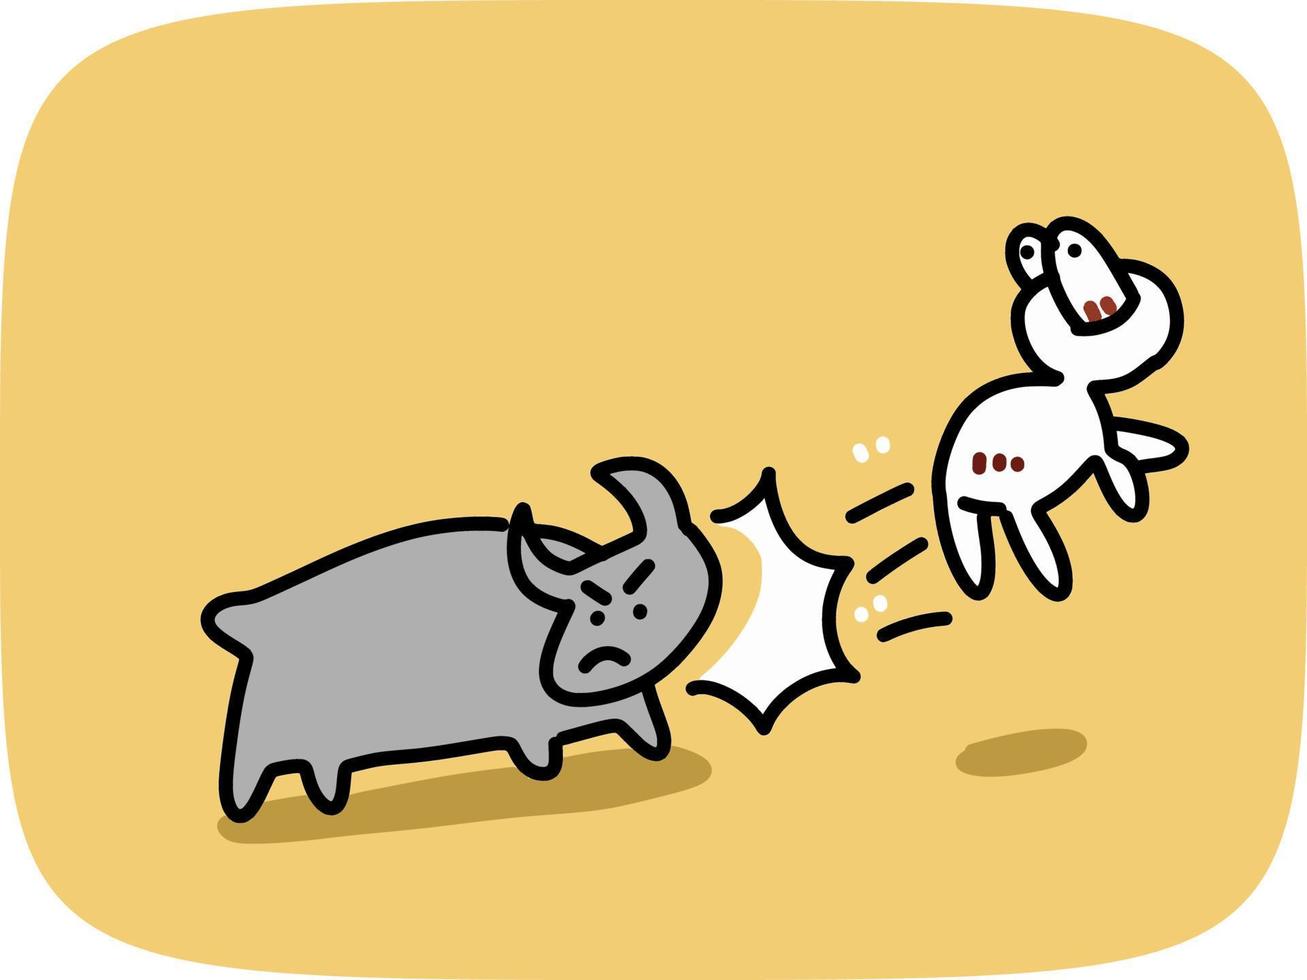 vector illustration of buffalo attack a man